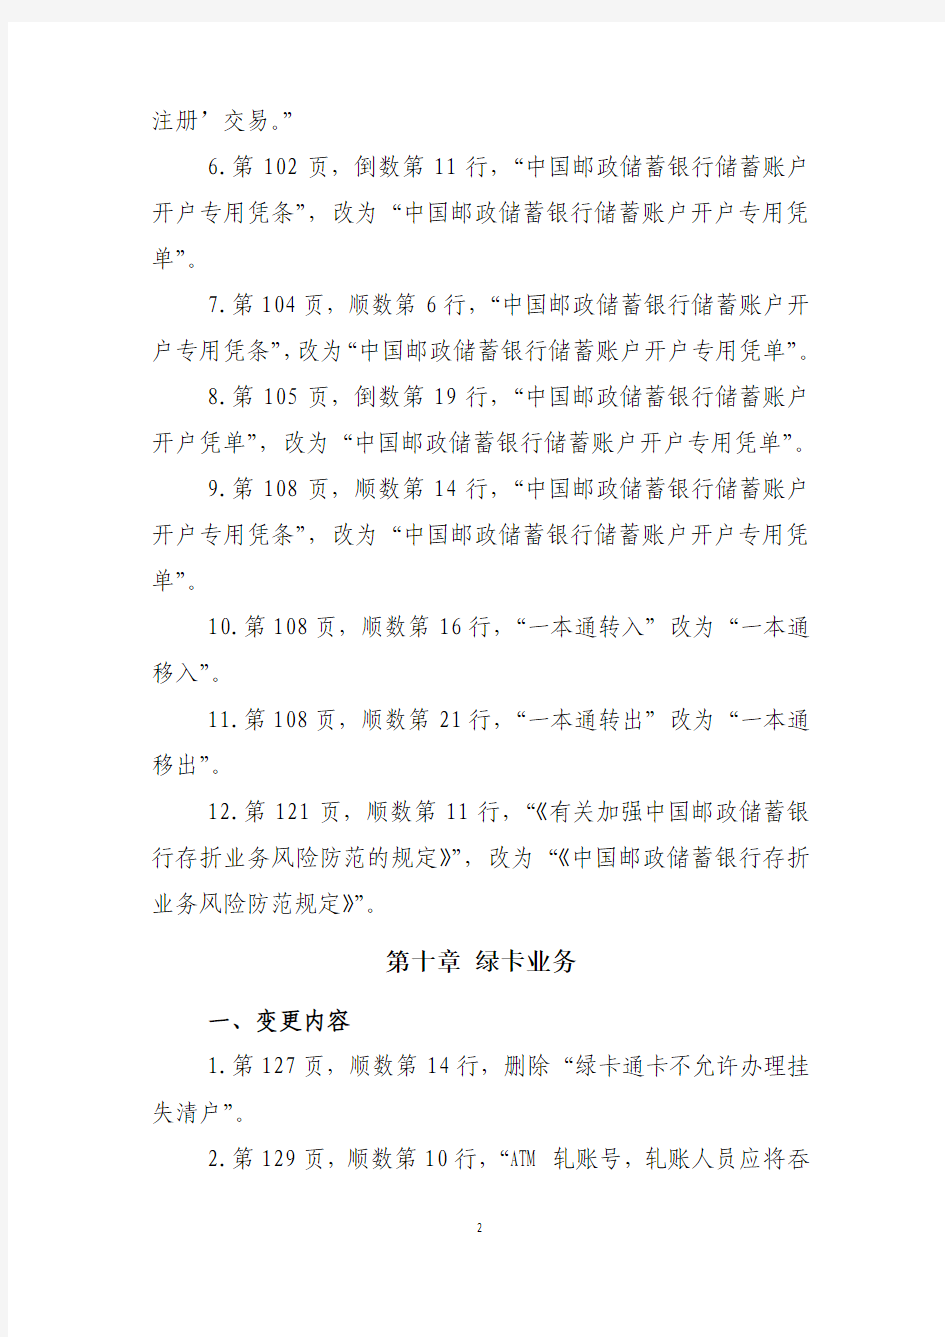 2012年中国邮政储汇业务员理论知识考试范围与内容